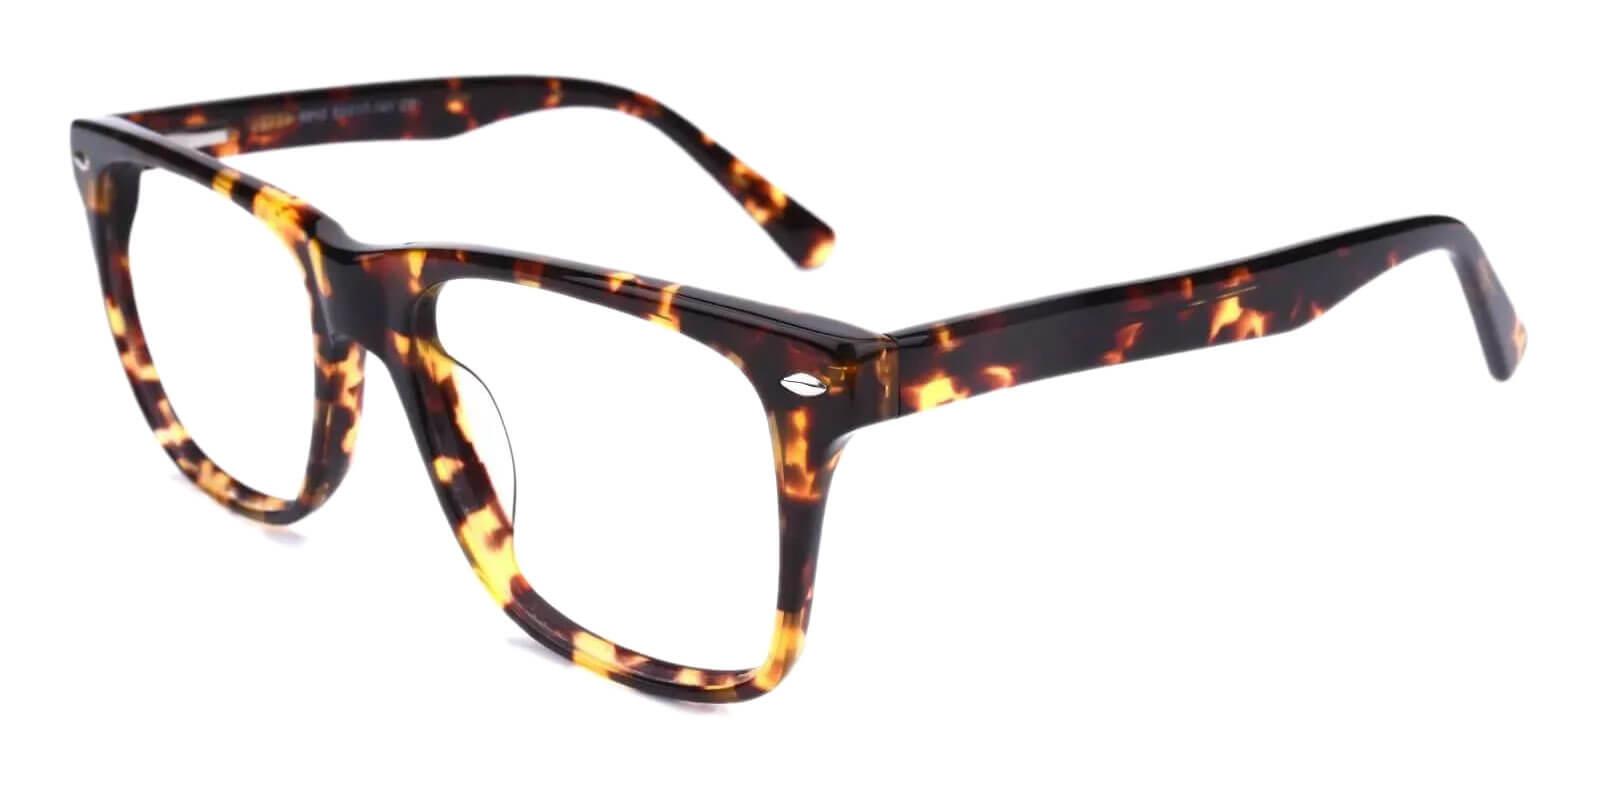 Montalvo Tortoise Acetate Eyeglasses , SpringHinges , UniversalBridgeFit Frames from ABBE Glasses